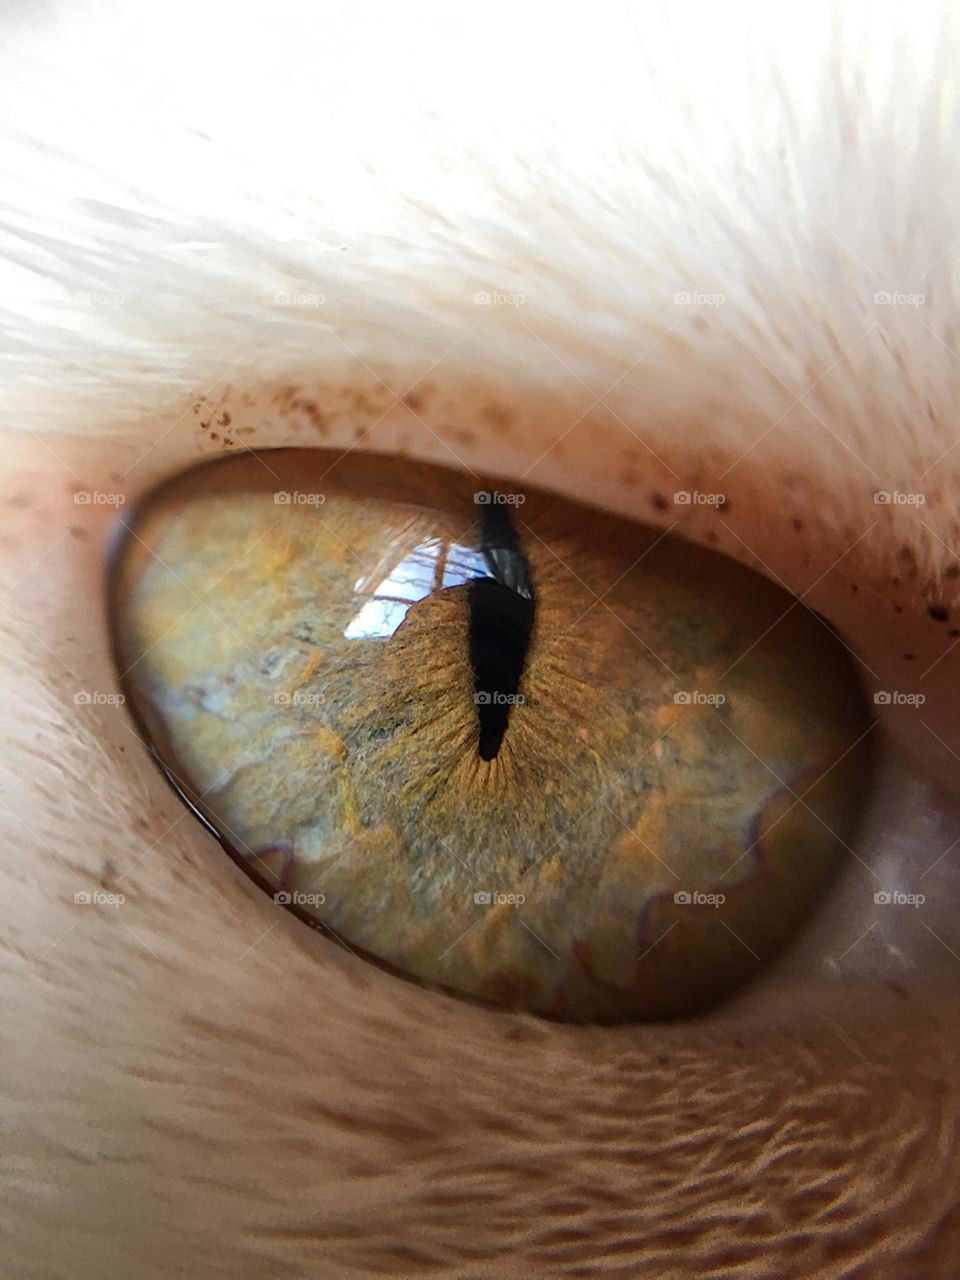 Sauron's Eye.
Cat eye